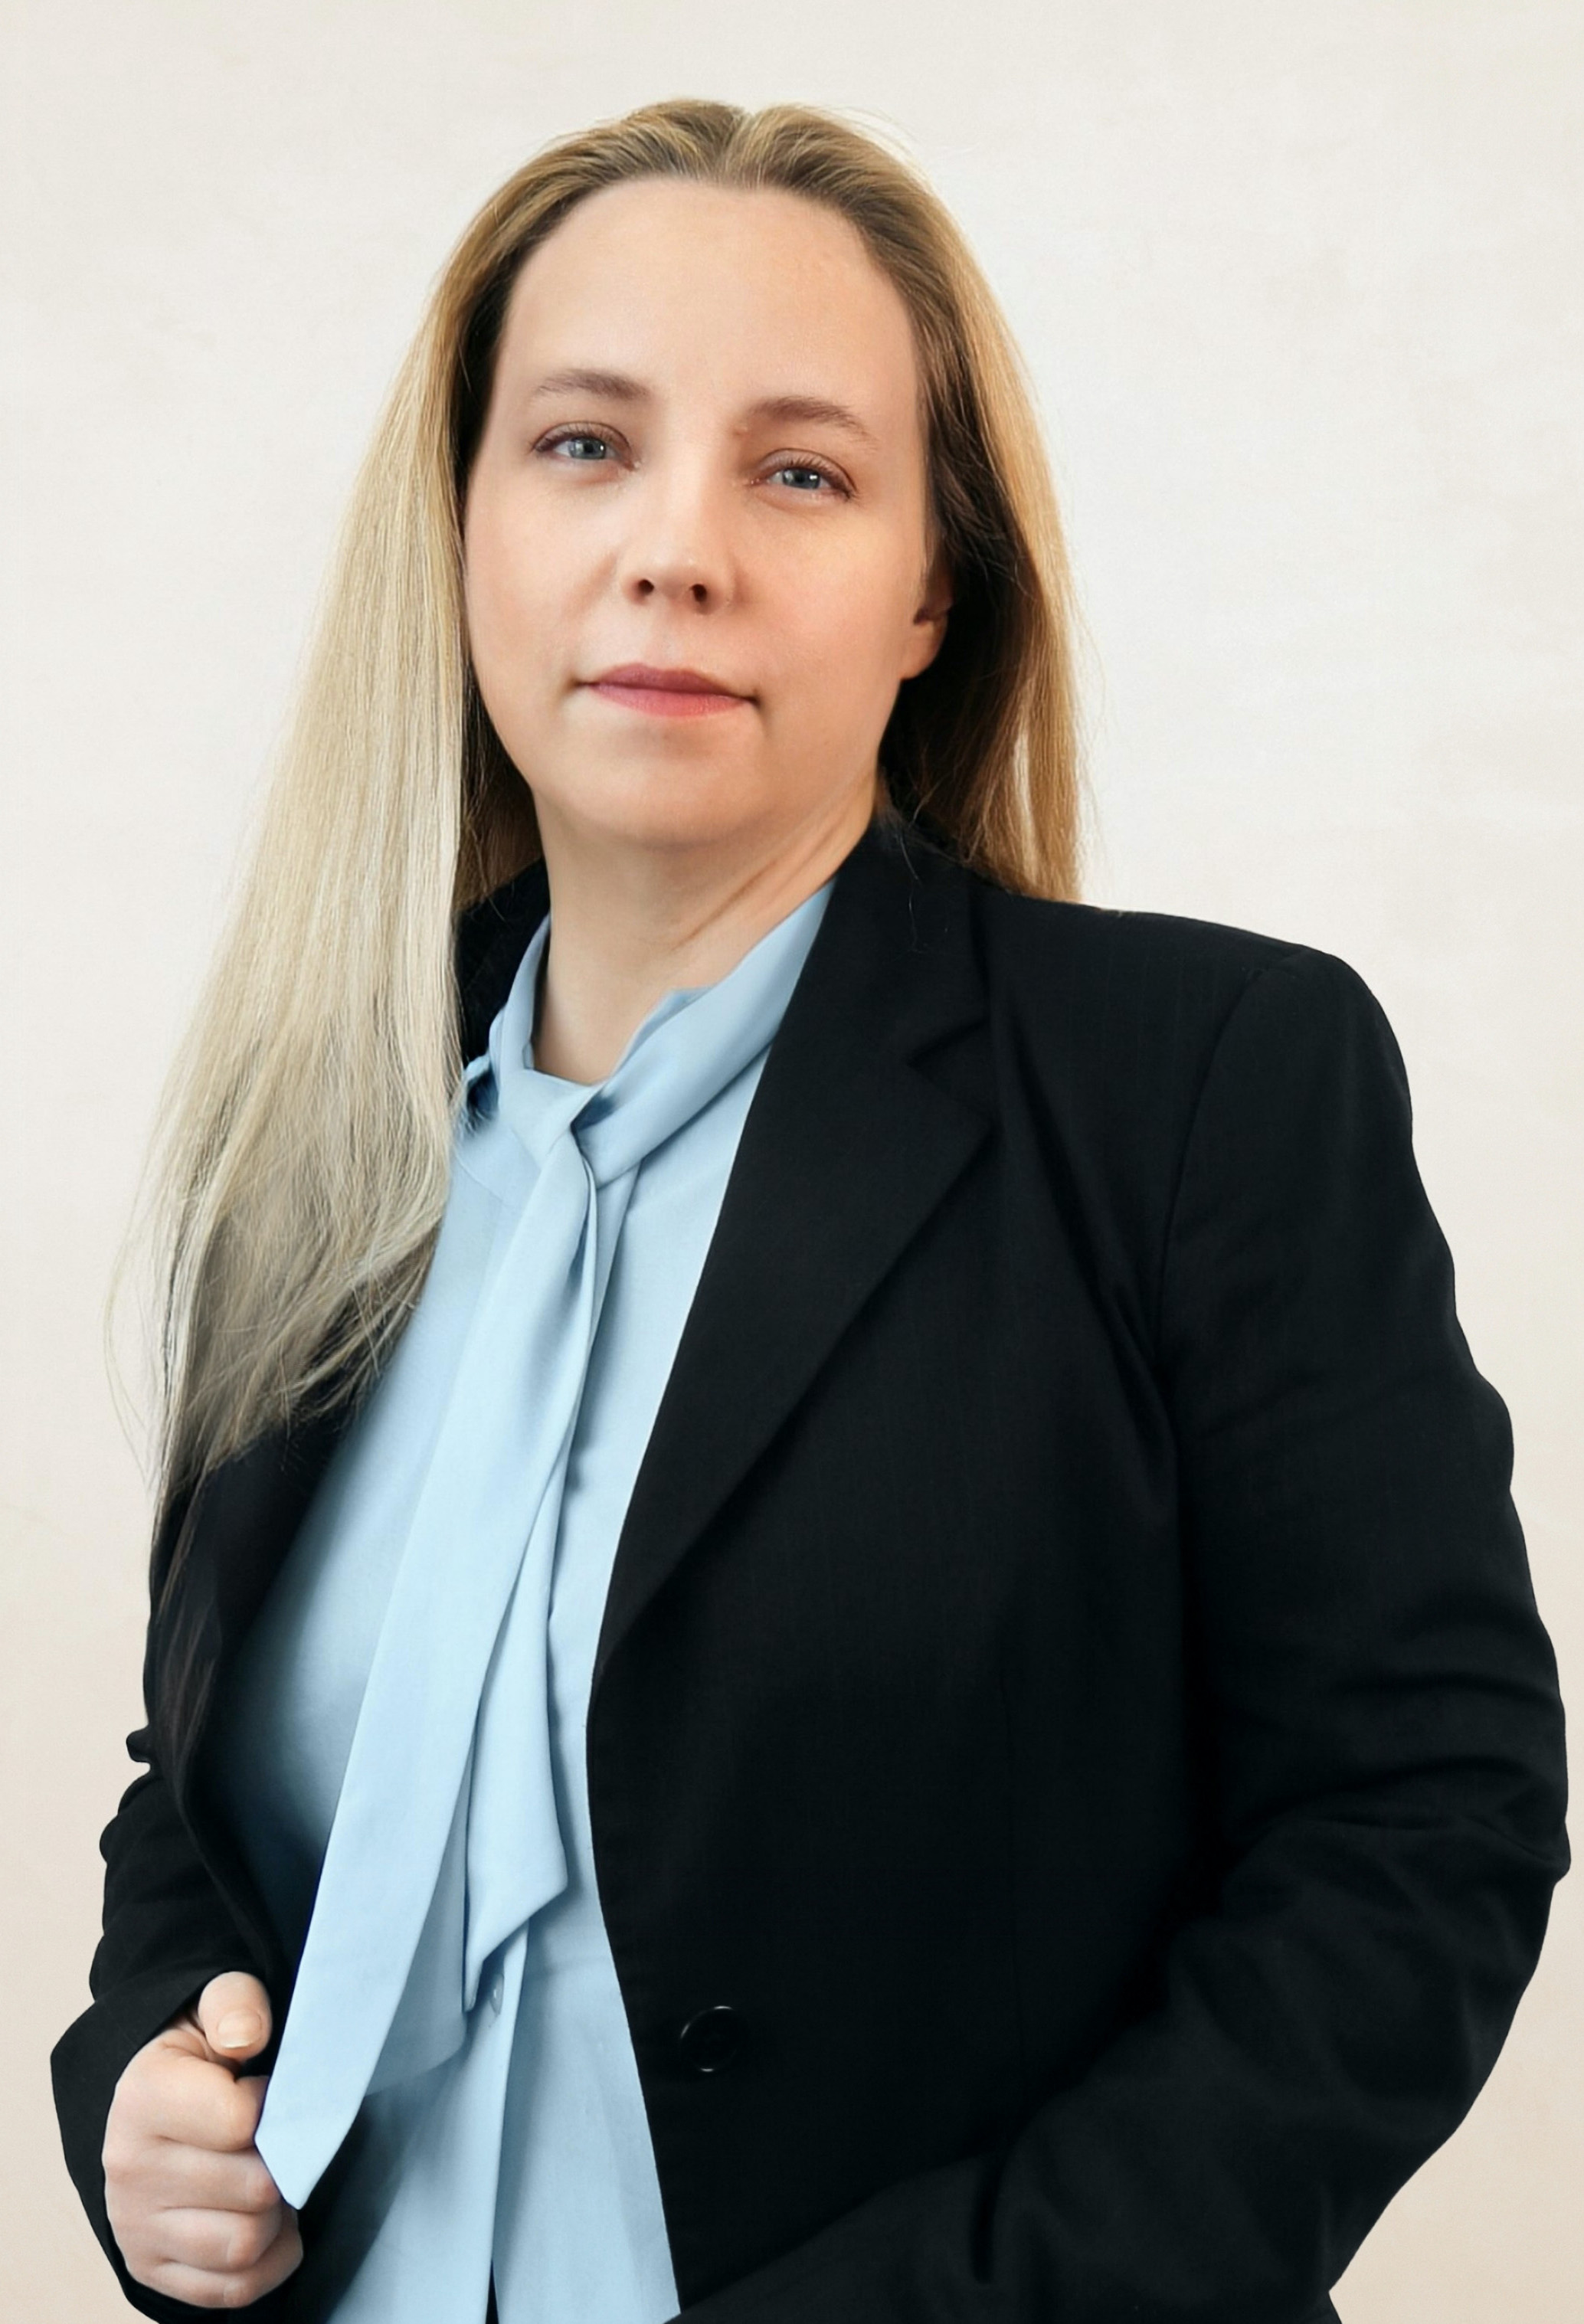 Какурникова Анна Михайловна - «А.Залесов и партнеры» - Патентно-правовая фирма и Адвокатское бюро